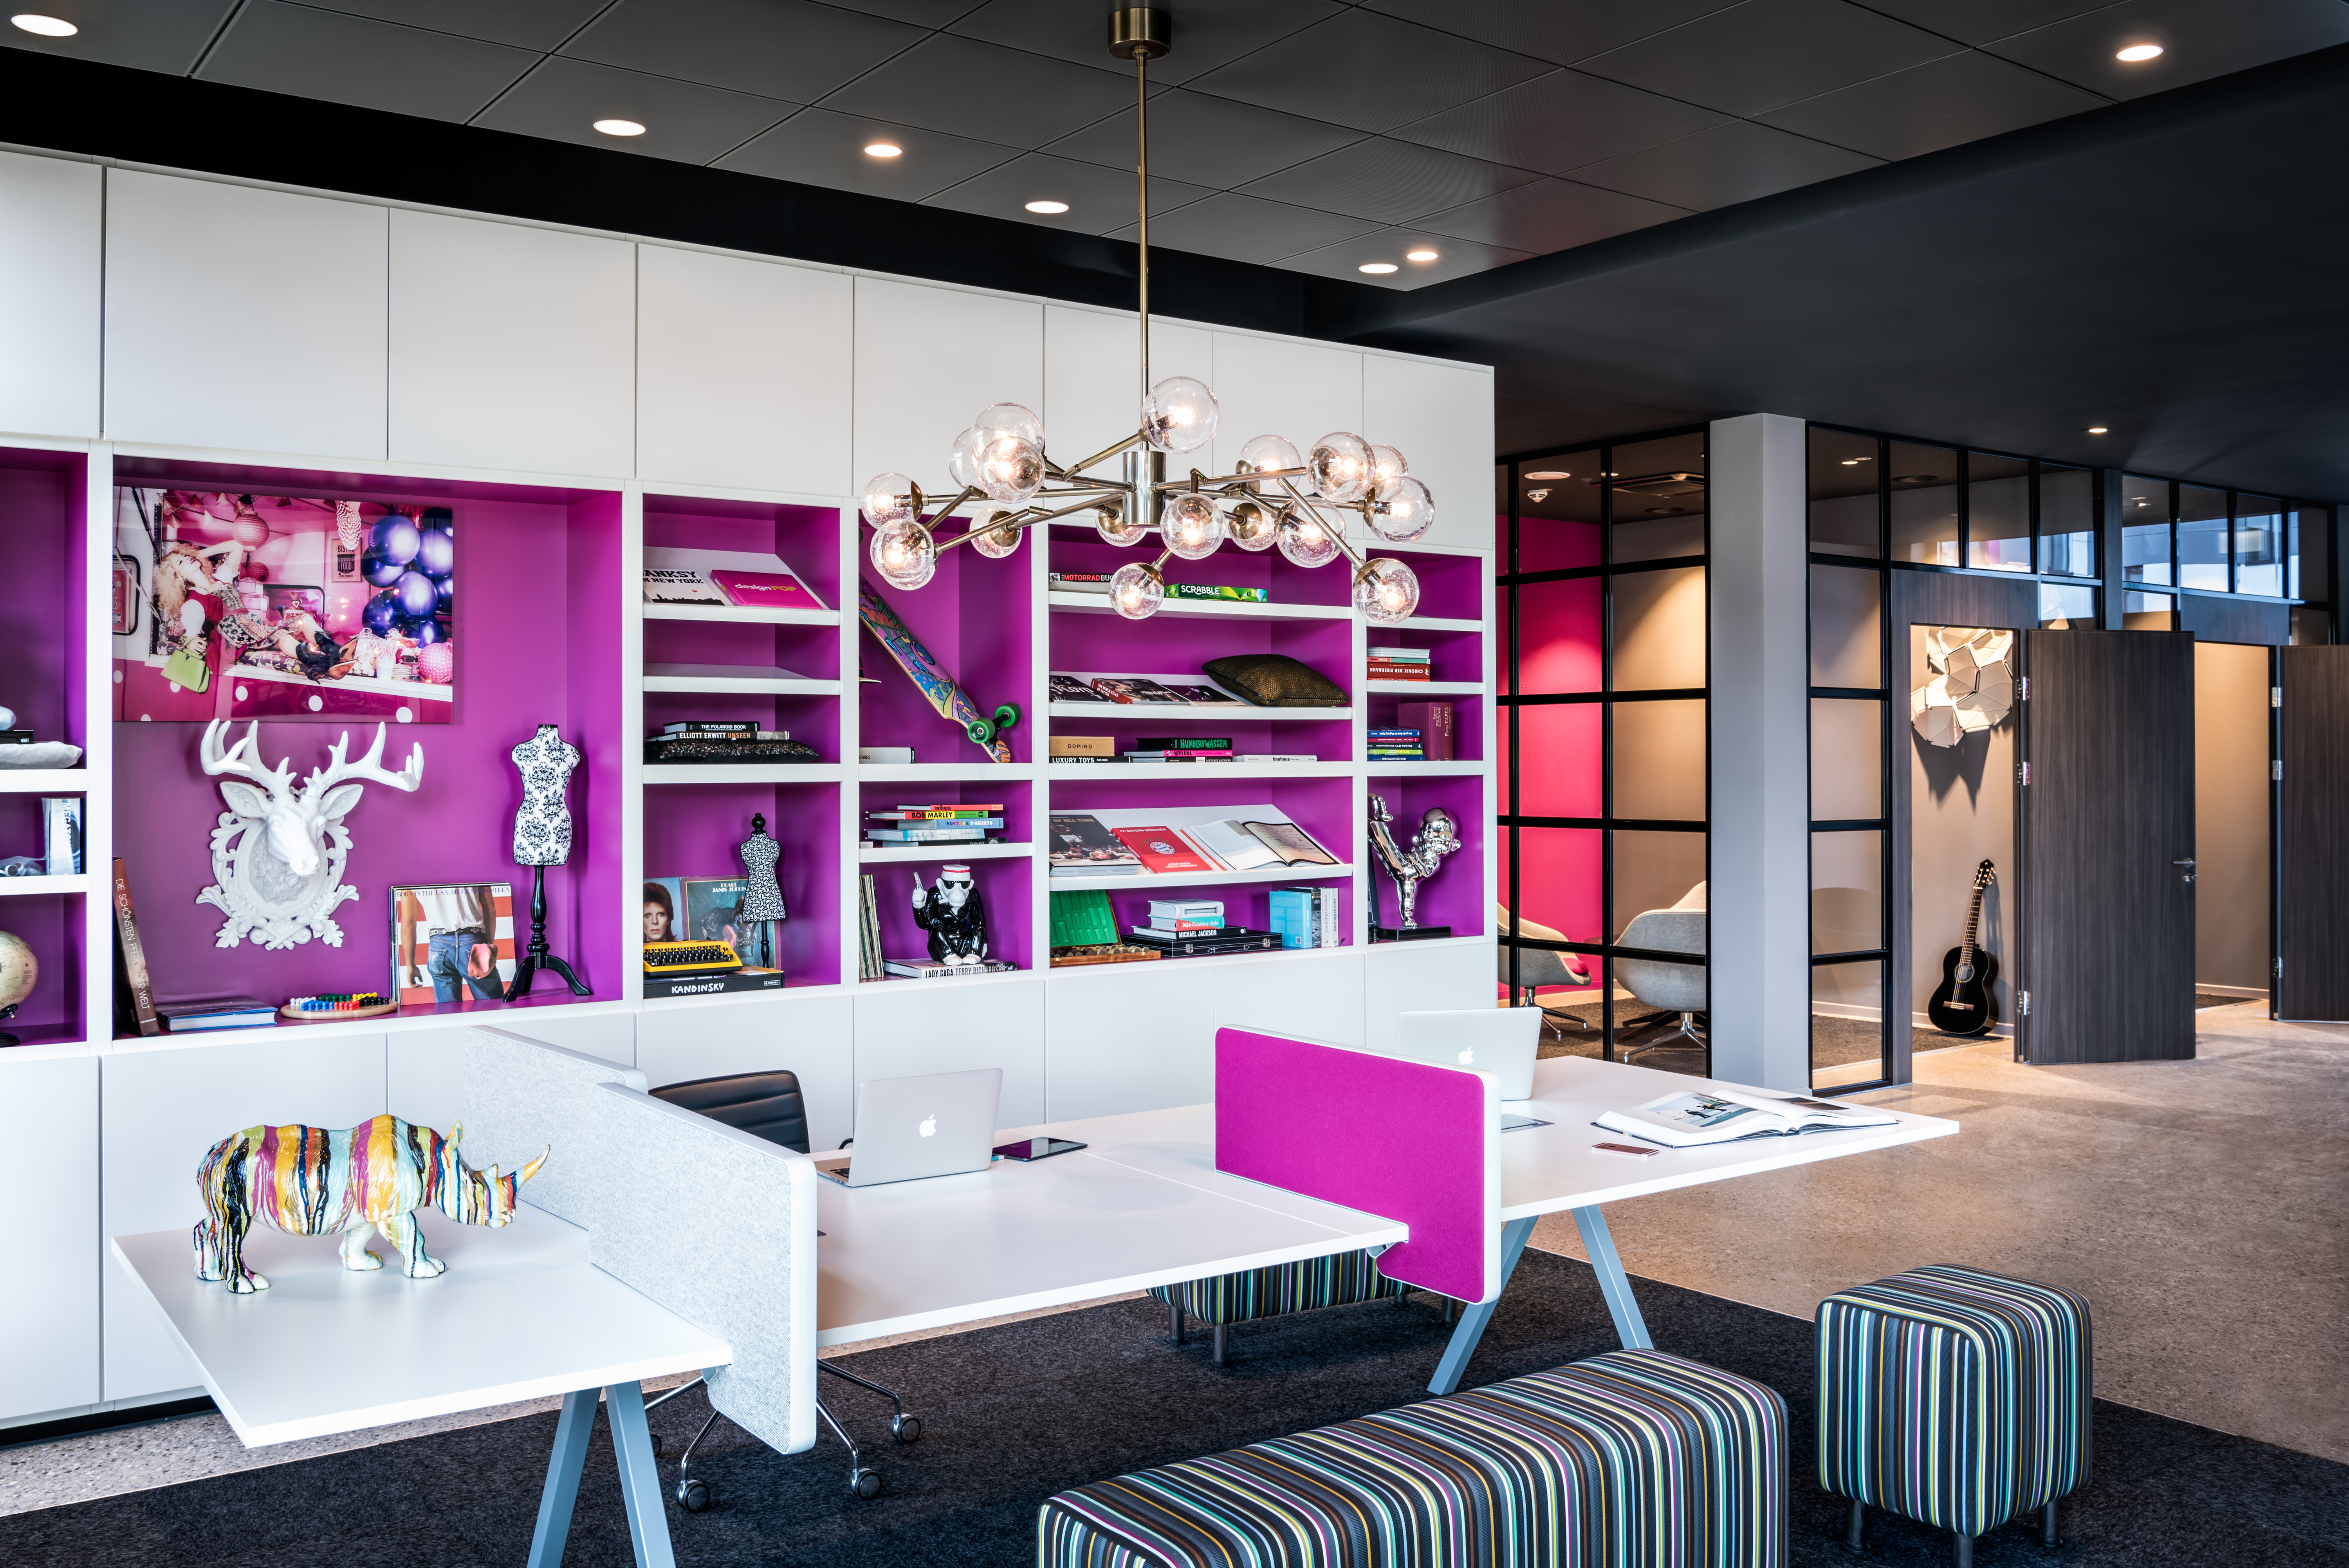 Das ist kein Büro, sondern eine Hotellobby – Neues Moxy Hotel am Flughafen München setzt Maßstäbe im Hoteldesign